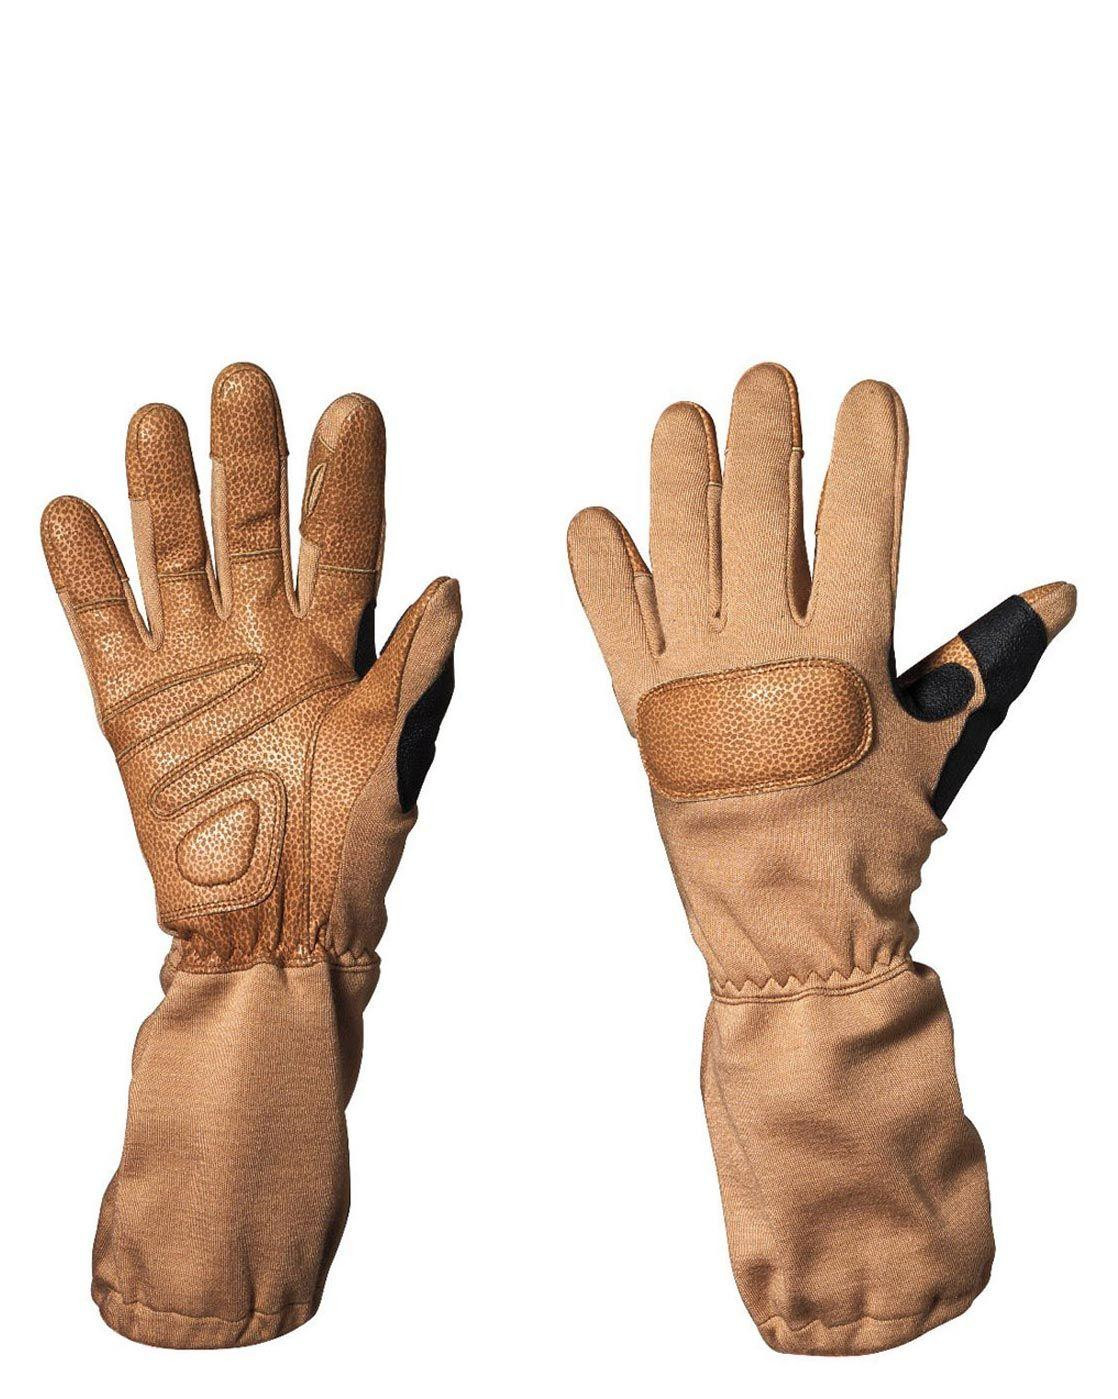 #1 på vores liste over handsker er Handsker